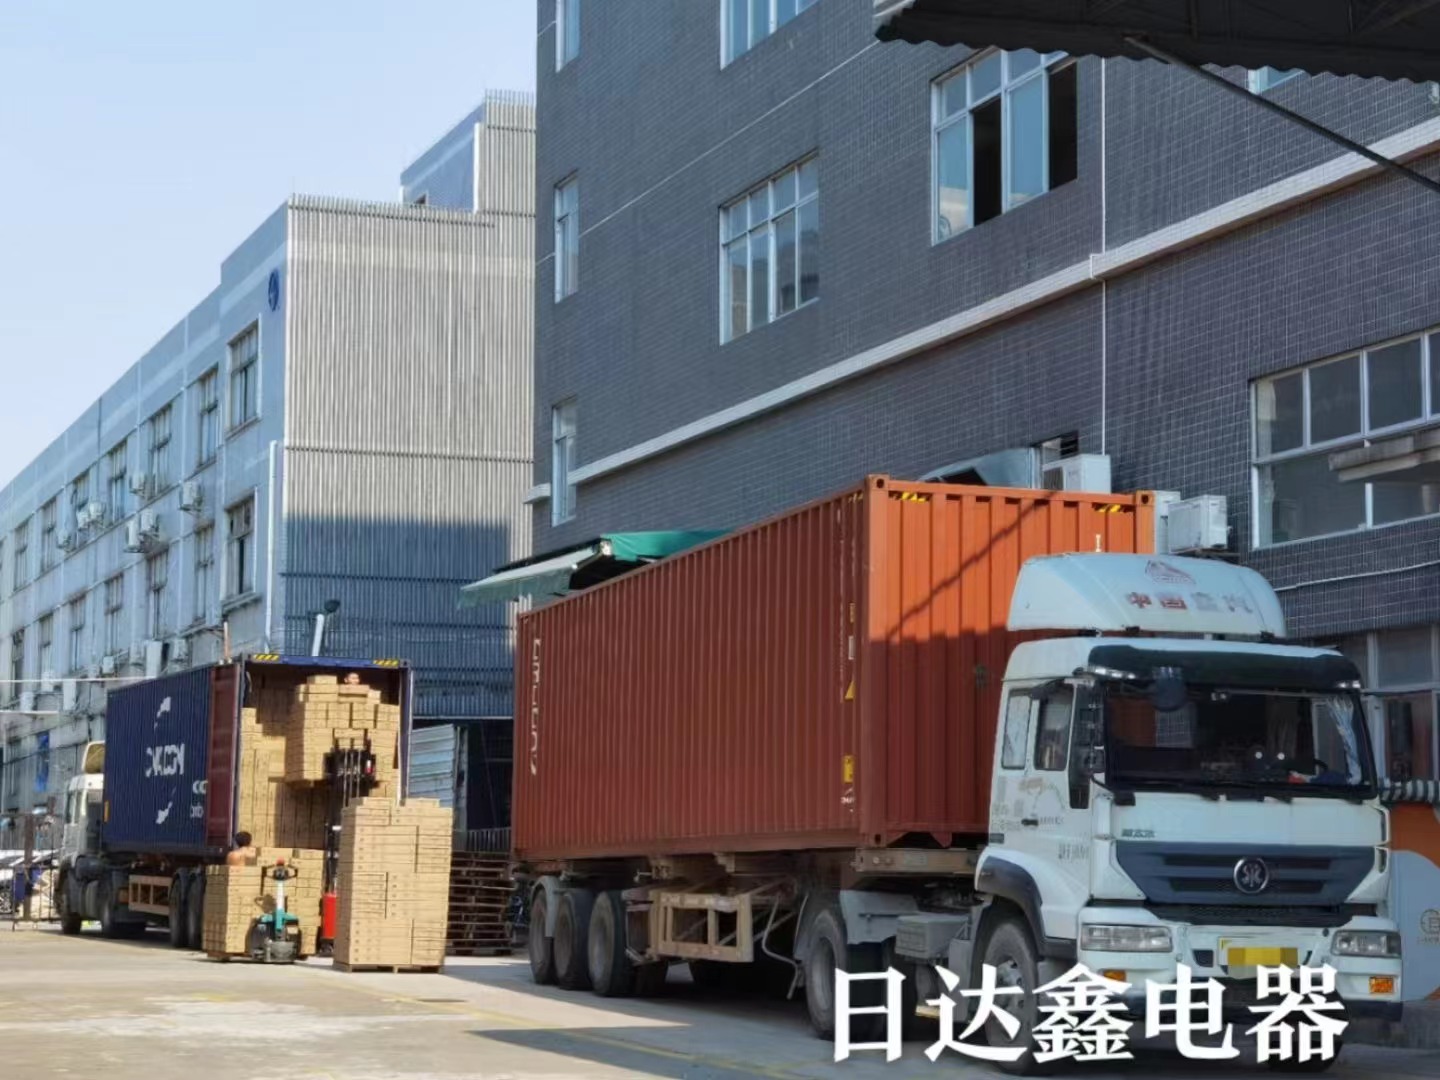 Názov: Kolísanie cien prepravy prináša výzvy pre čínsky exportný obchod